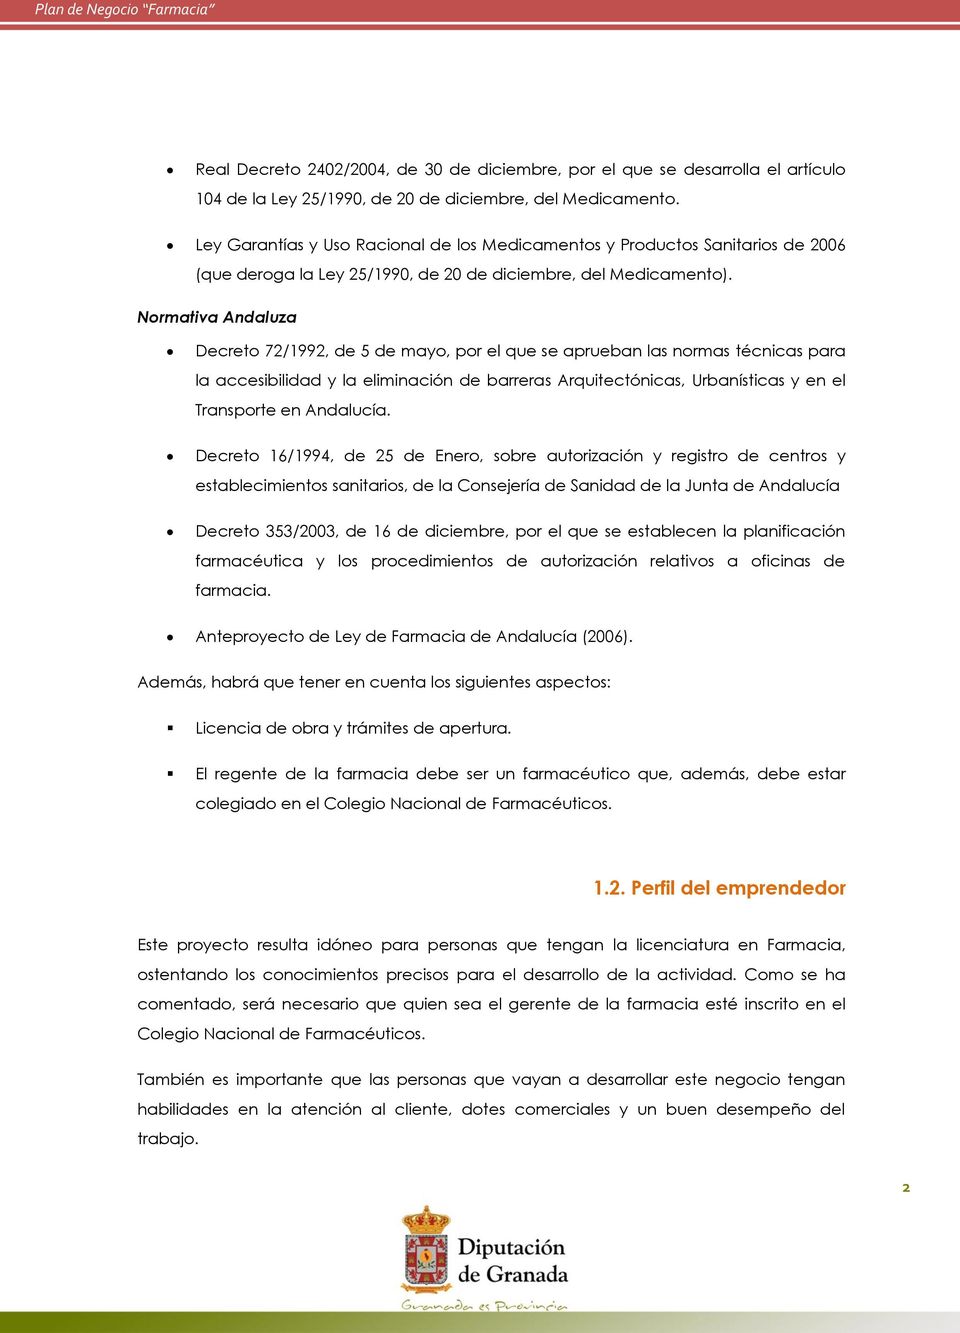 Normativa Andaluza Decreto 72/1992, de 5 de mayo, por el que se aprueban las normas técnicas para la accesibilidad y la eliminación de barreras Arquitectónicas, Urbanísticas y en el Transporte en